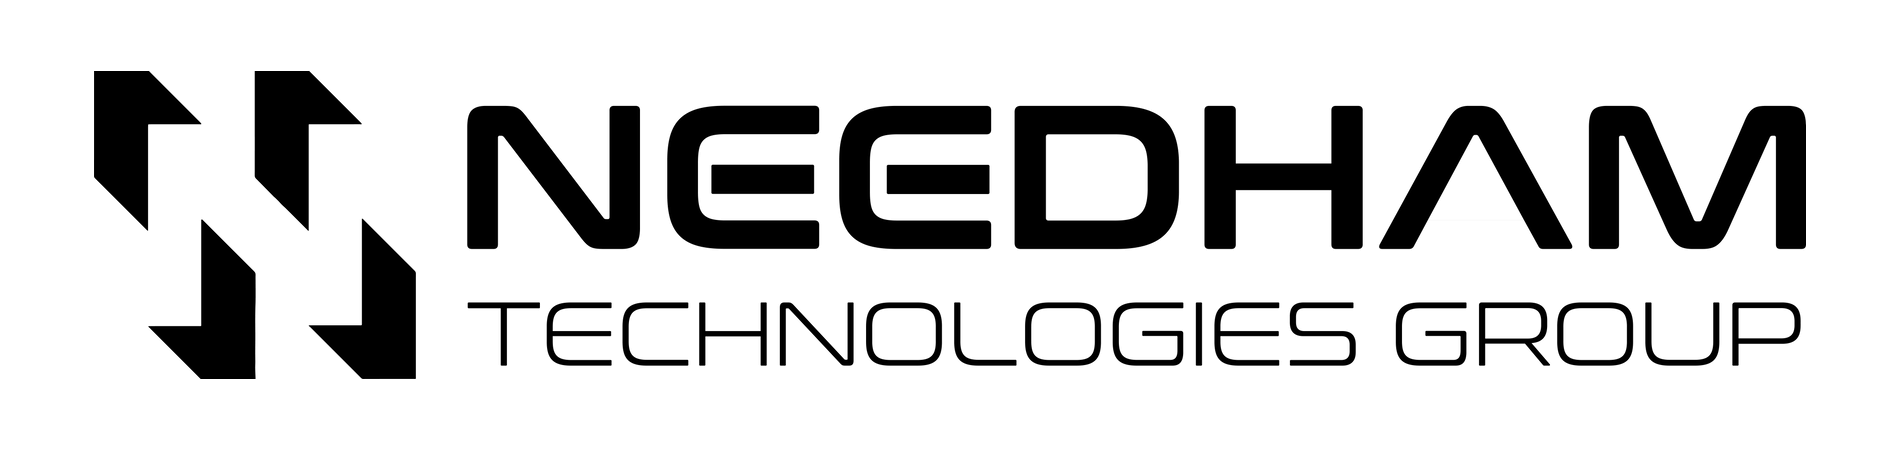 wellmeadow-needham-group-logo